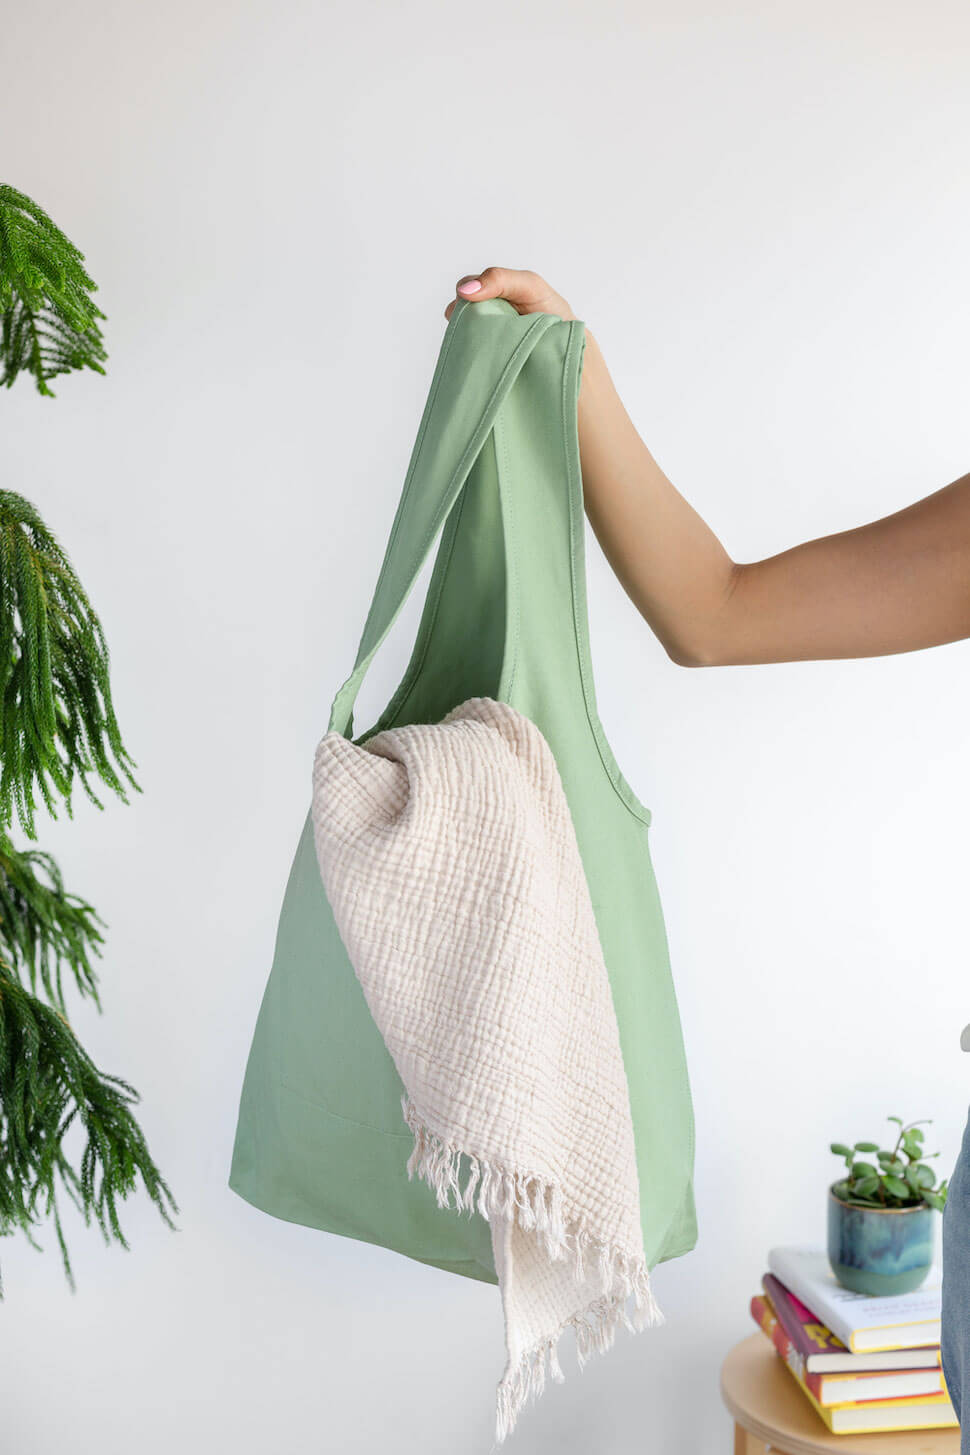 slouchy boho shopping bag green moss matcha